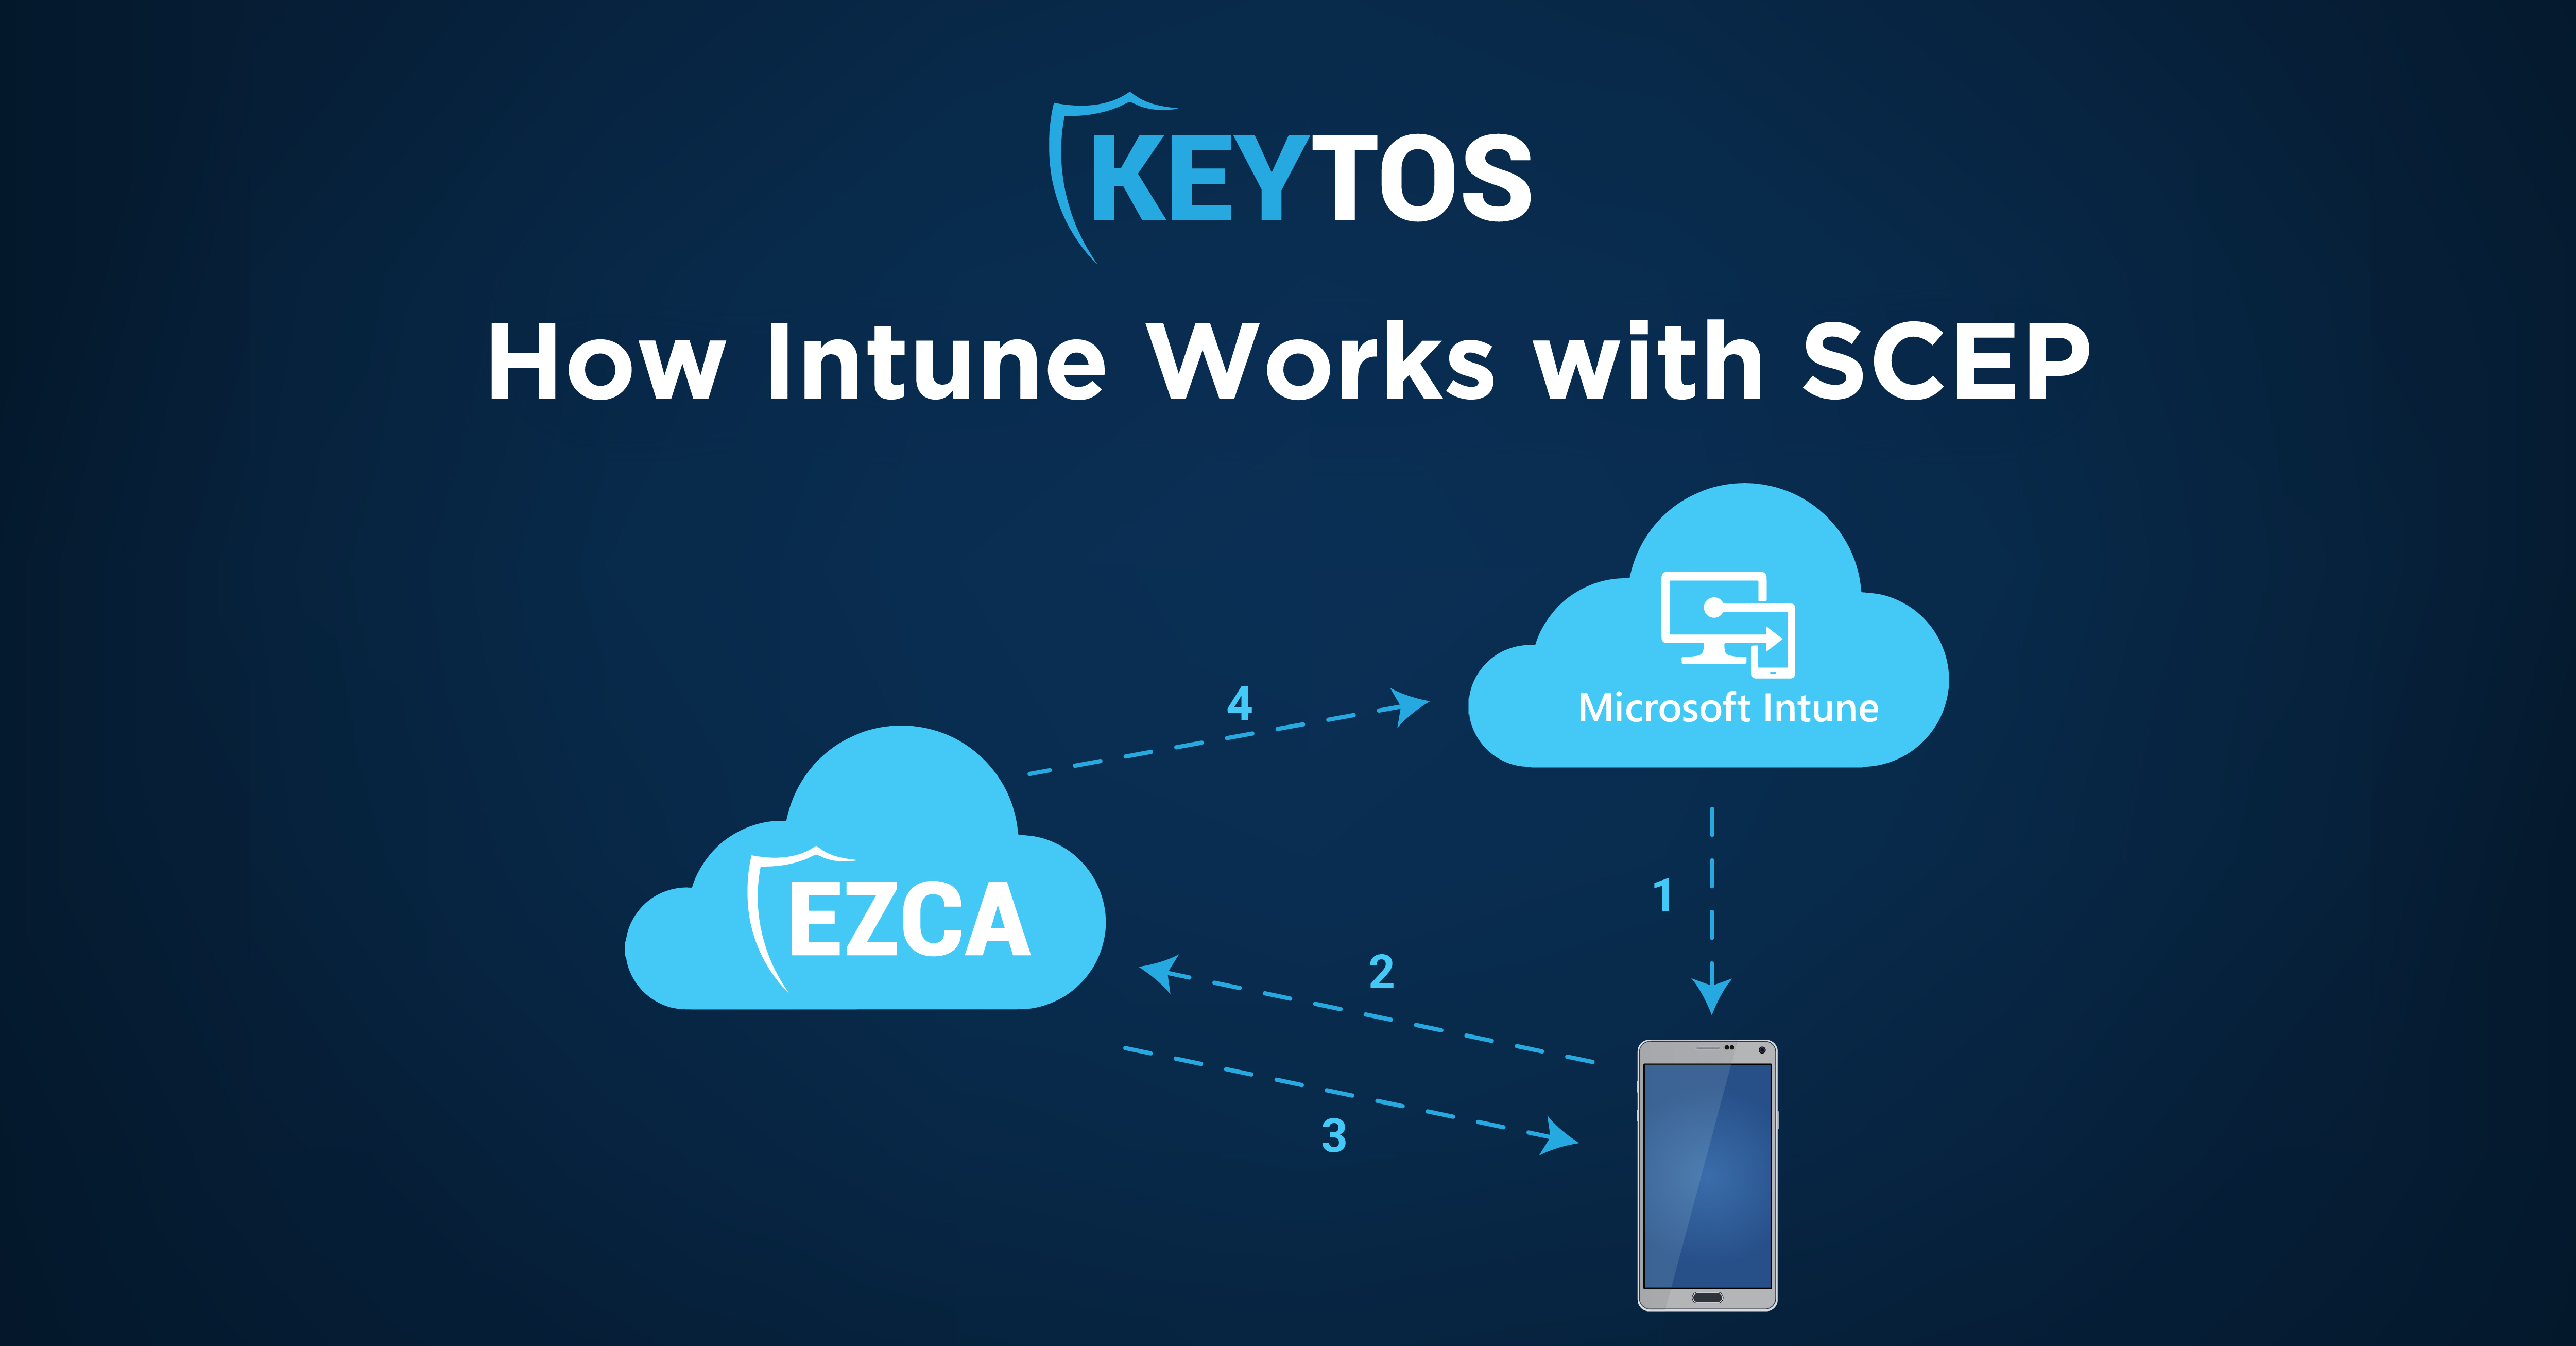 ¿Cómo Funciona Intune con SCEP?